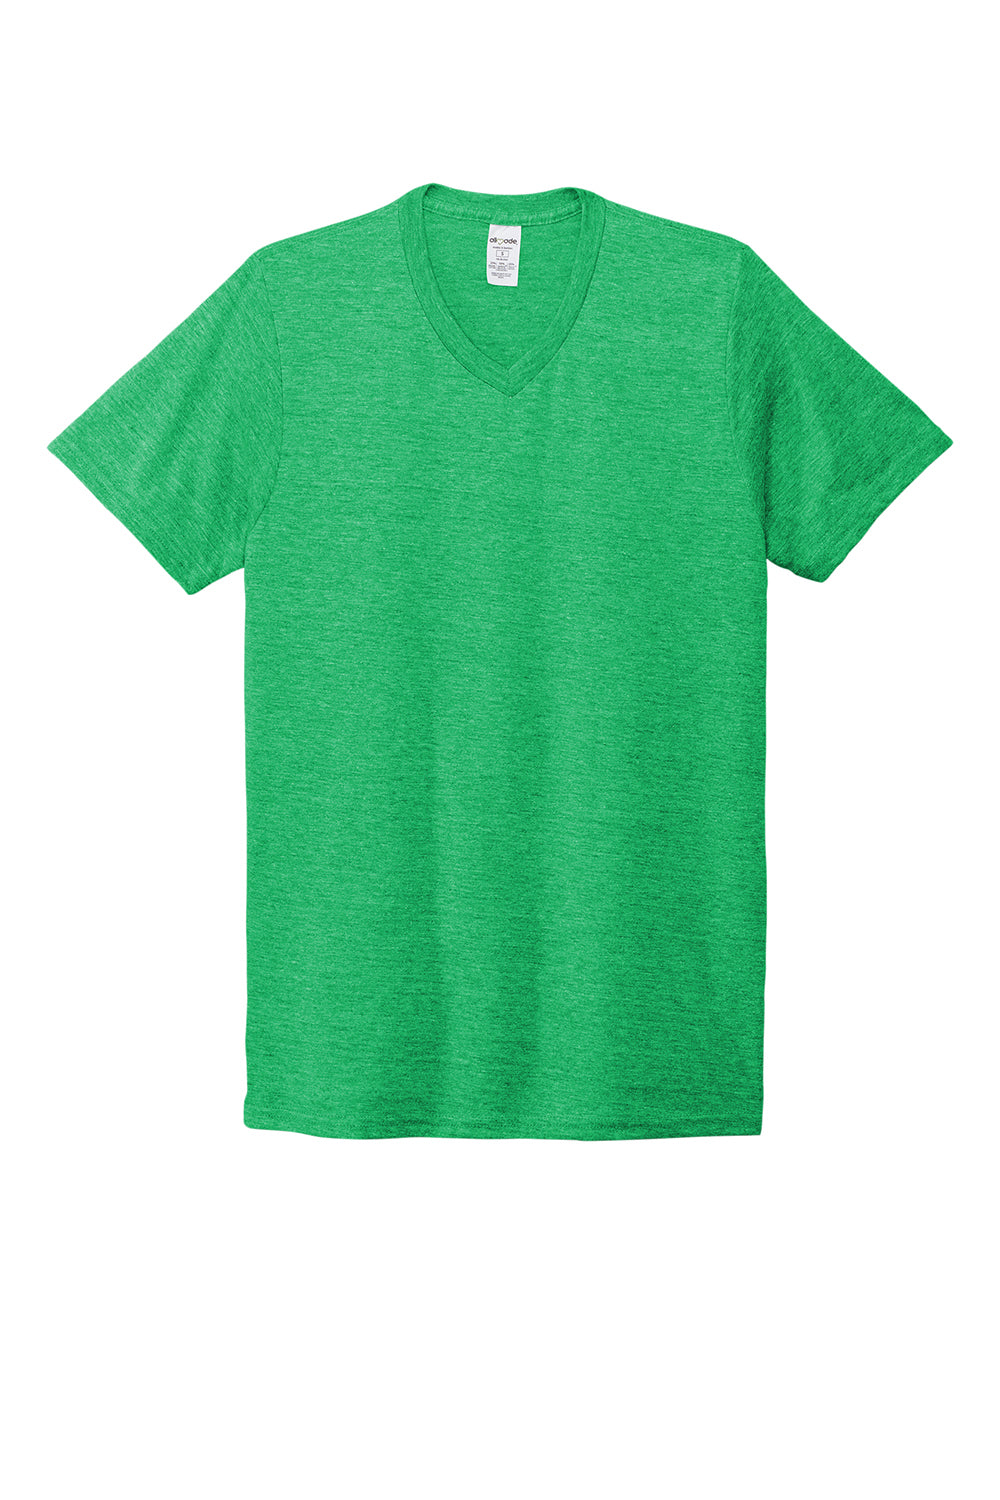 Allmade AL2014 Mens Short Sleeve V-Neck T-Shirt Enviro Green Flat Front